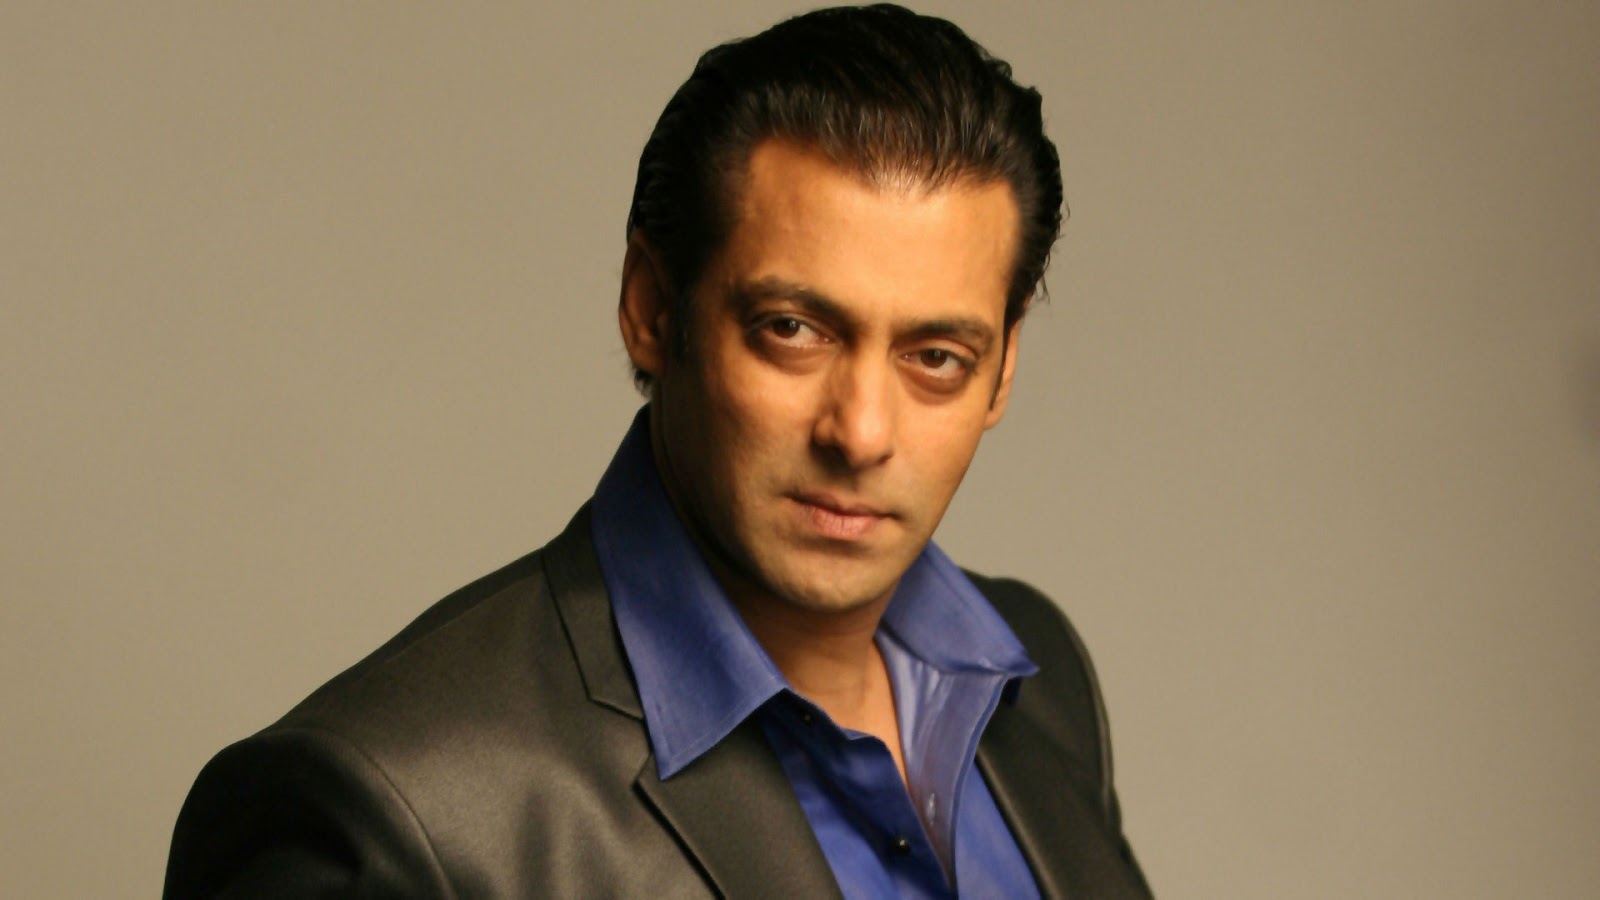 Latest 4K Ultra High Definition Wallpapers: Get Salman Khan 4k